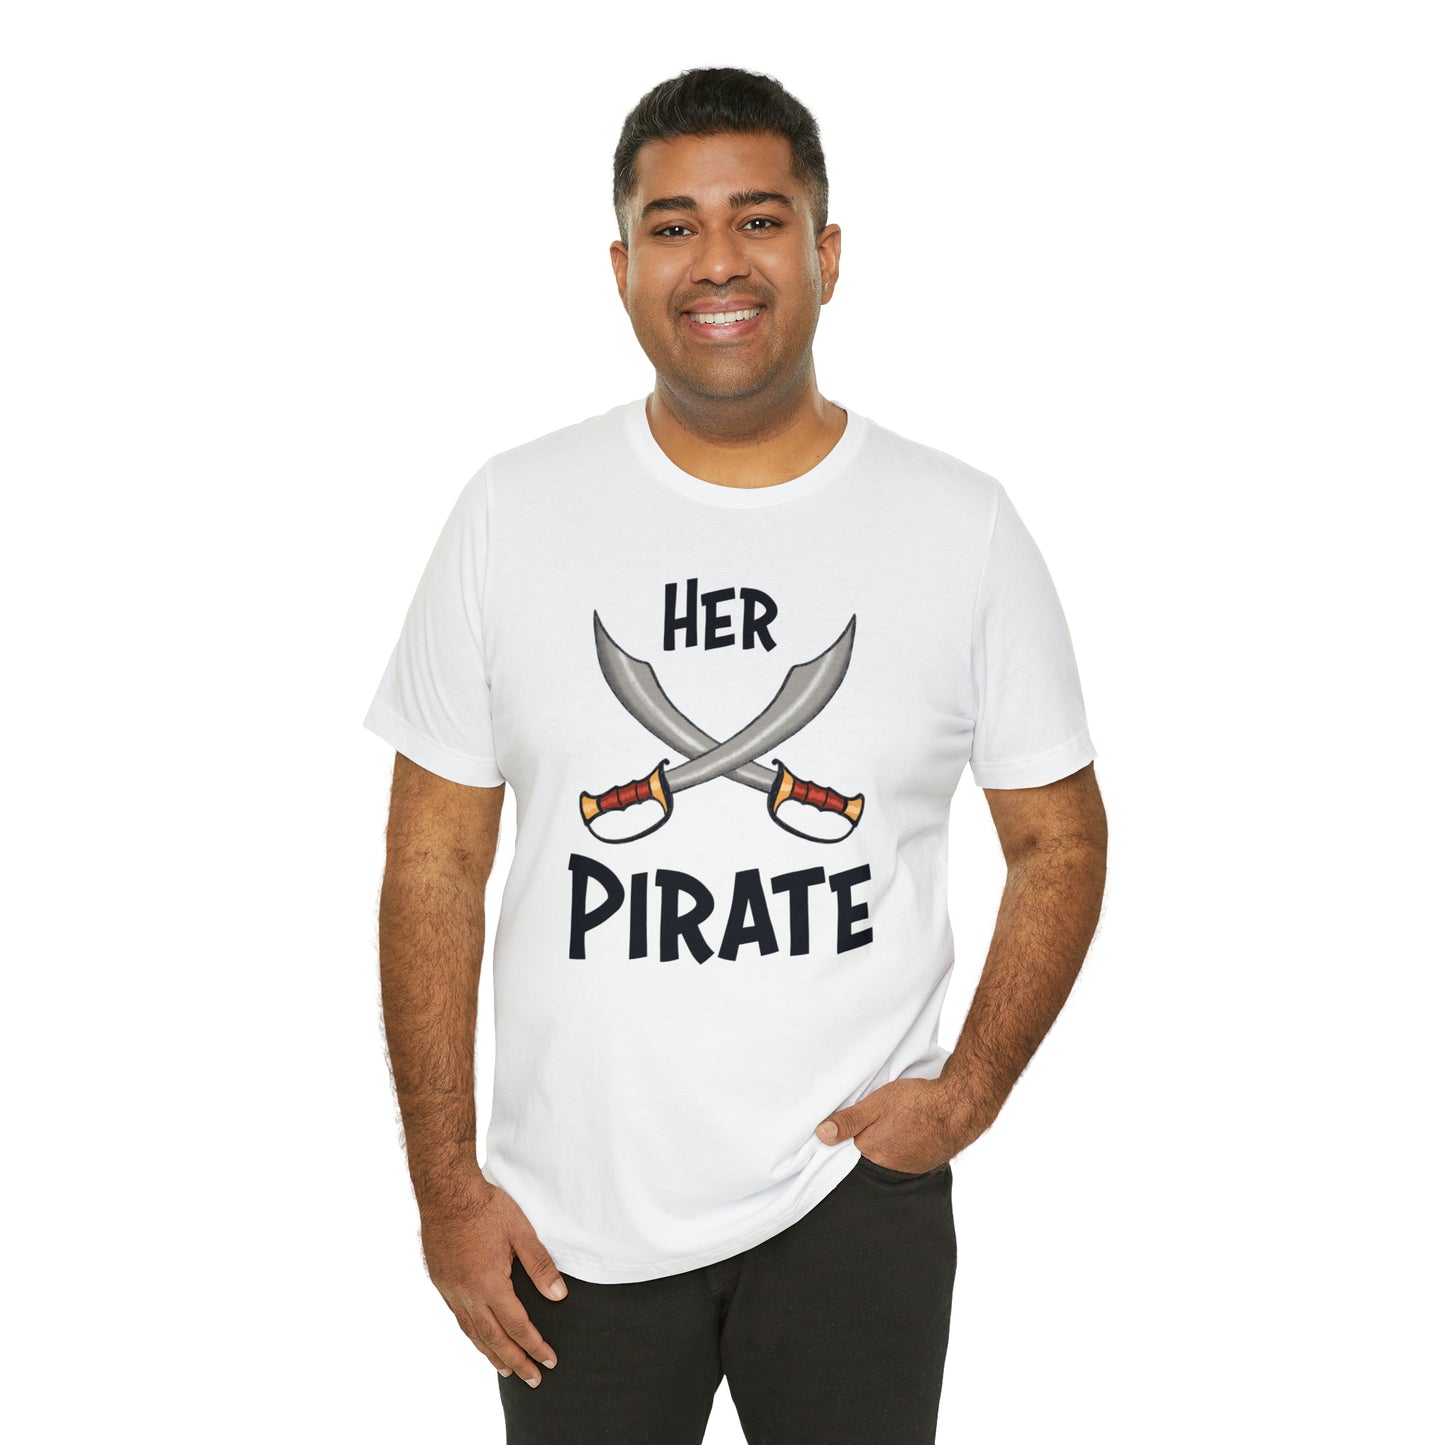 "Her Pirate" Premium Short Sleeve Tee